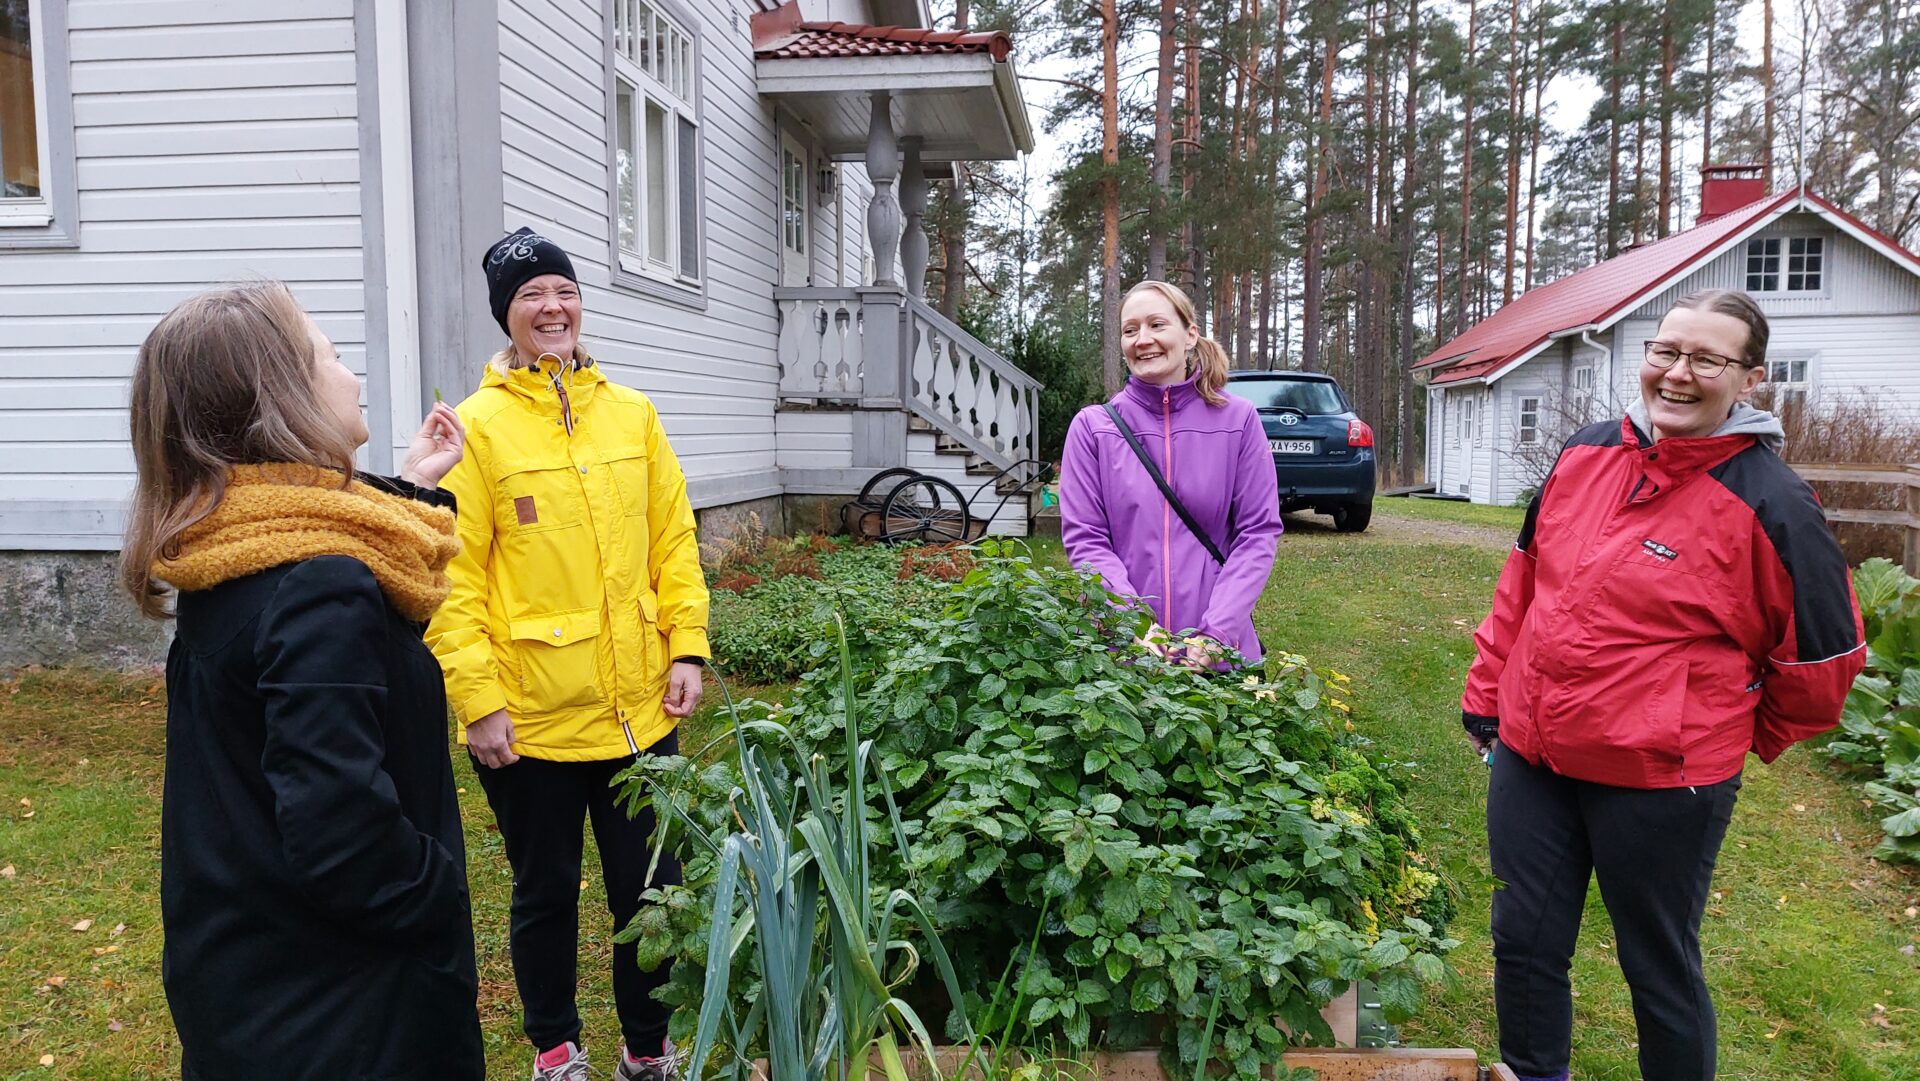 Neljä naista vanhan huvilan edessä seisovat ja nauravat viljelylaatikon äärellä.